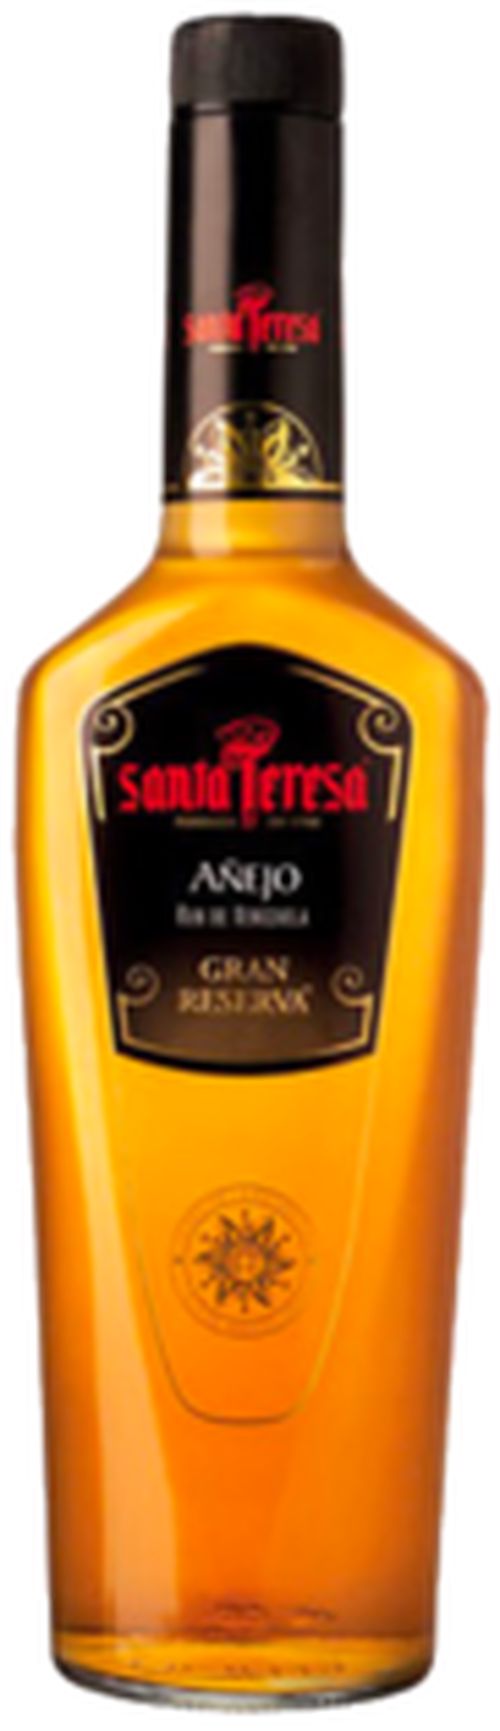 Santa Teresa Anejo Grand Reserva 40% 0,7l